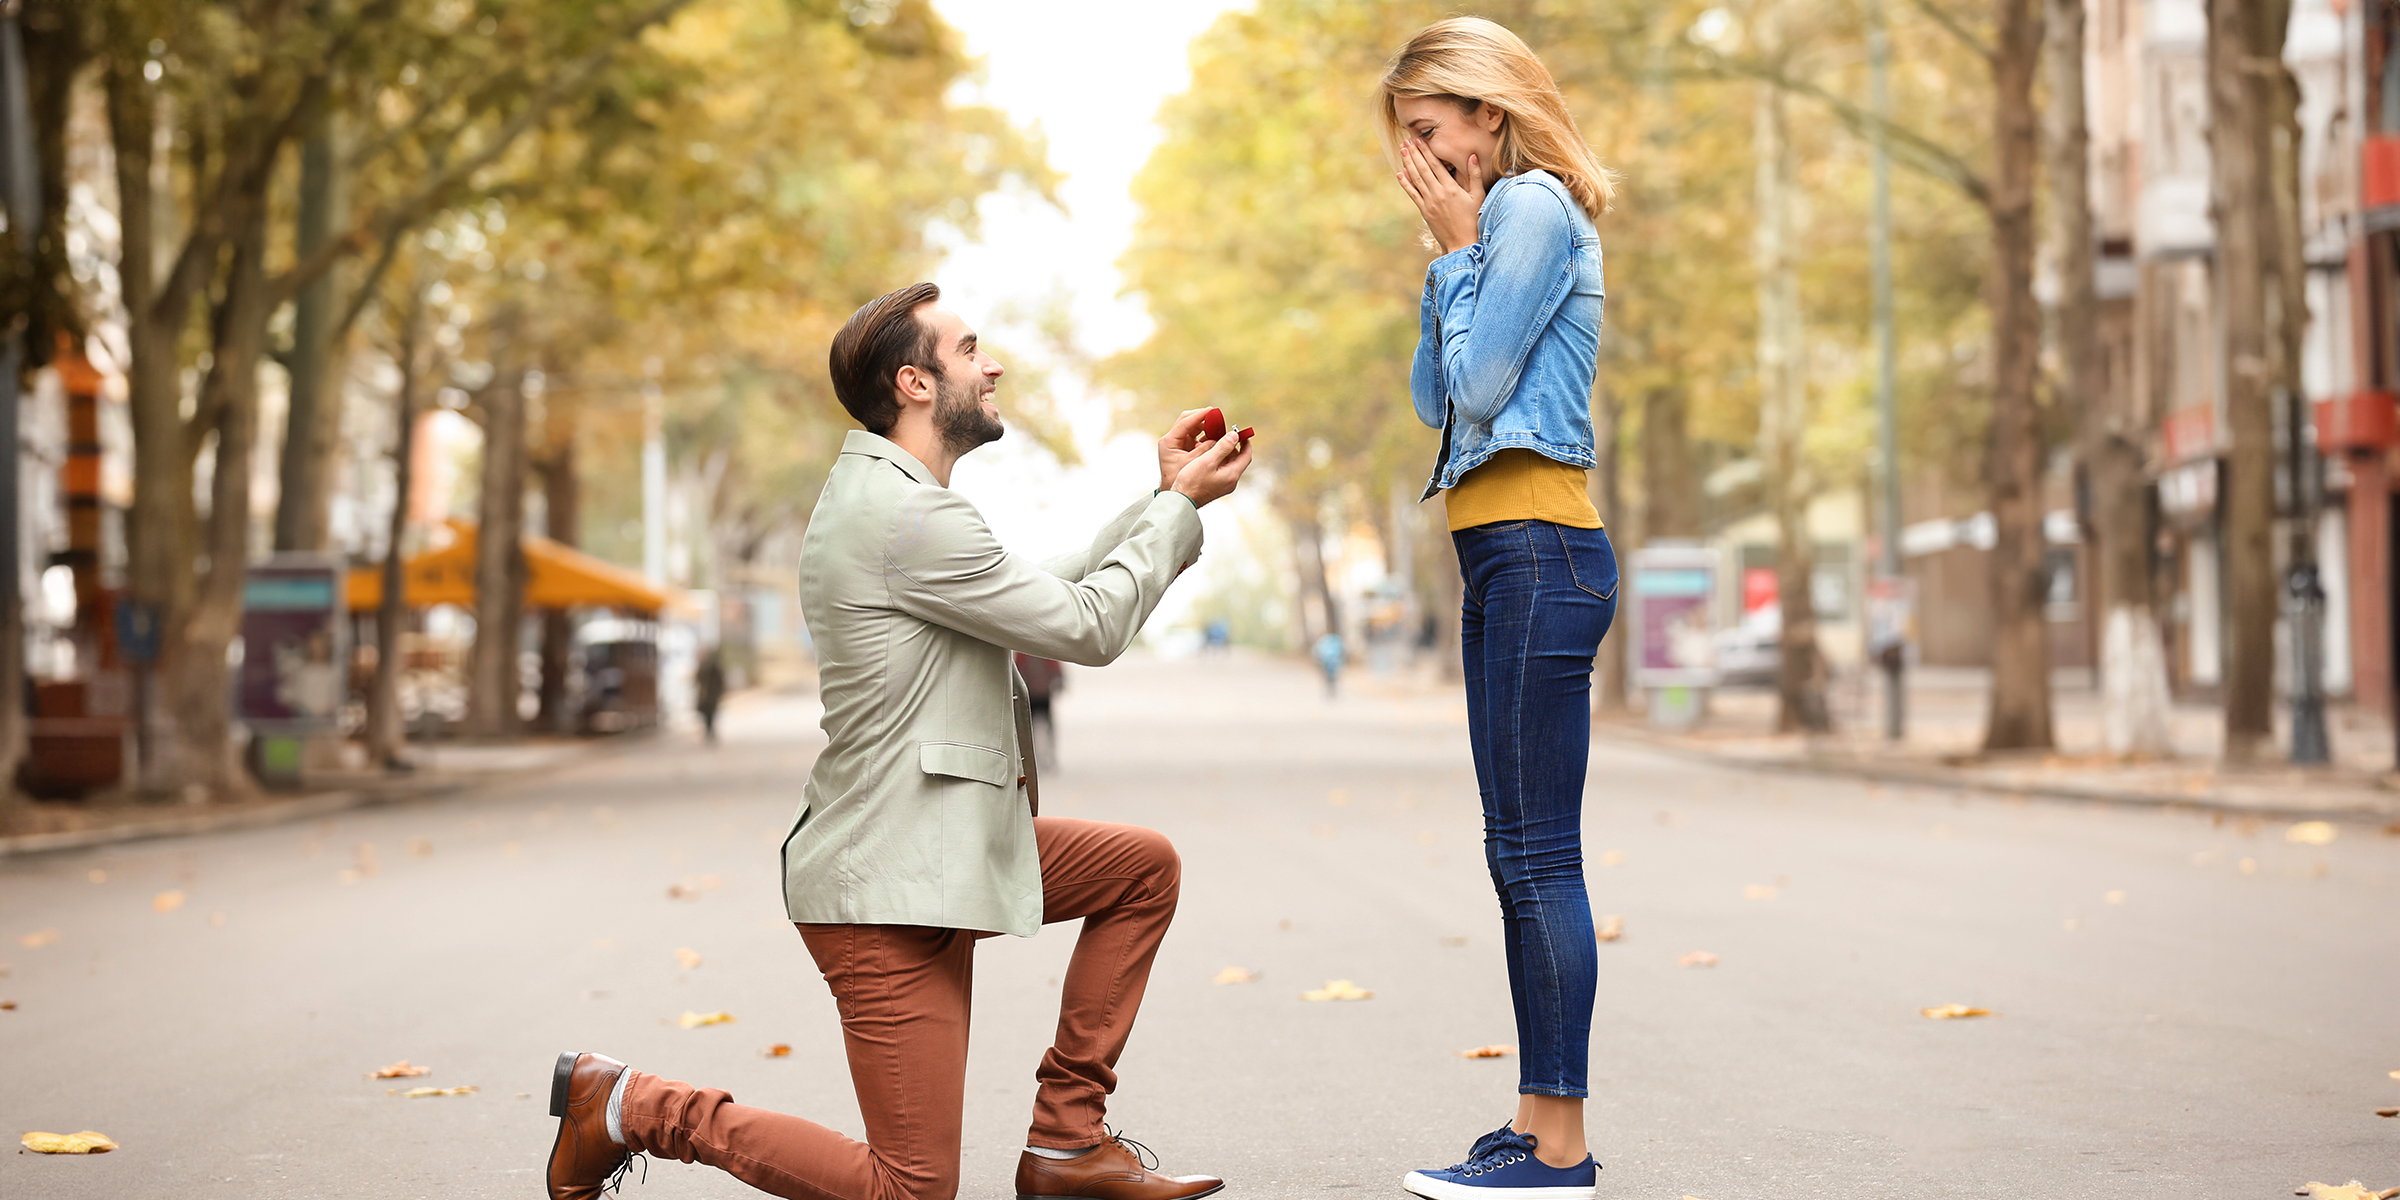 Un hombre pidiéndole matrimonio a una mujer | Fuente: Shutterstock